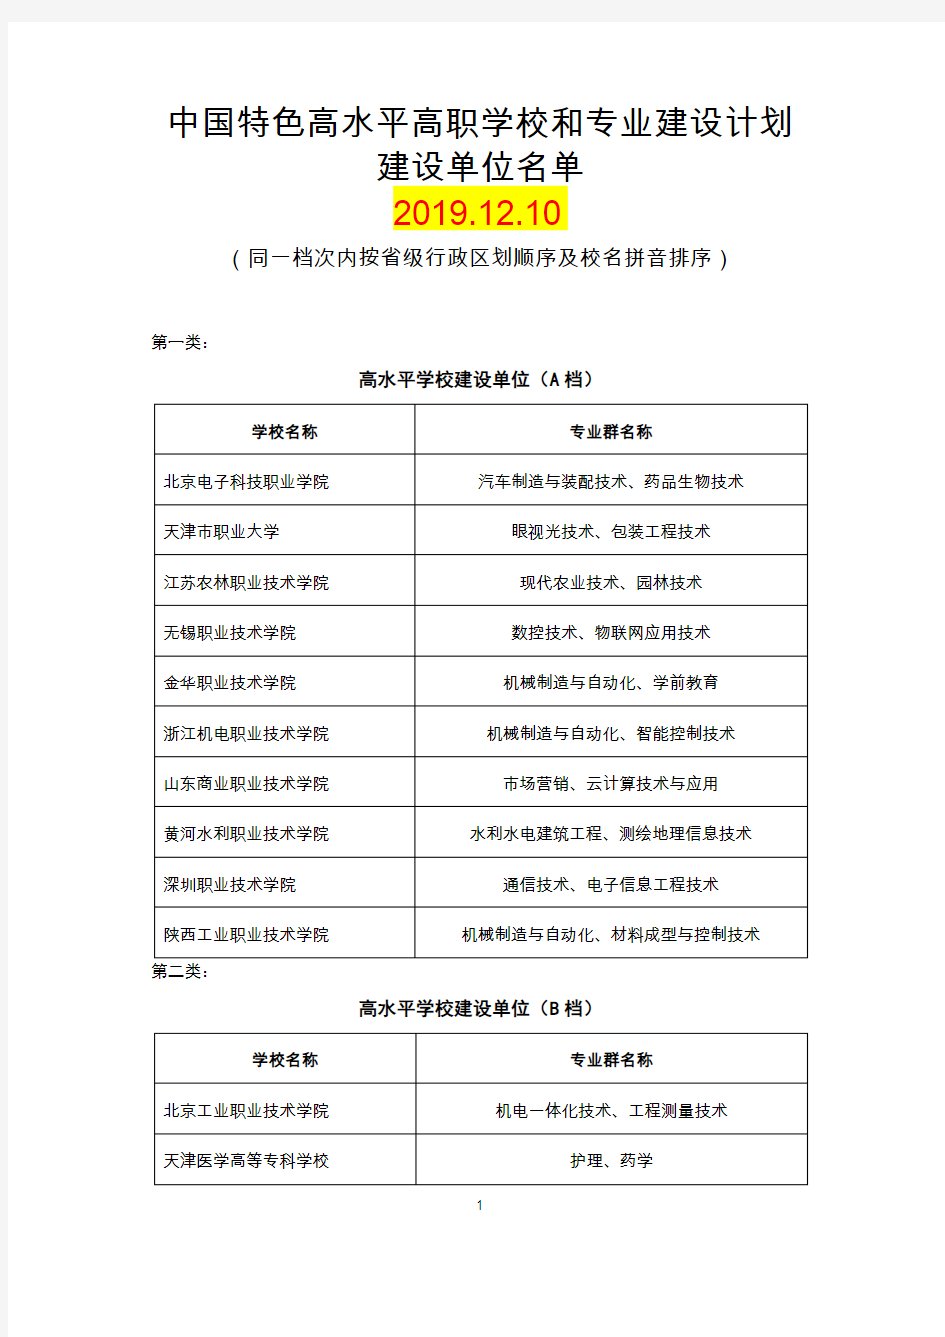 中国特色高水平高职学校和专业建设计划建设单位名单2019.12.10